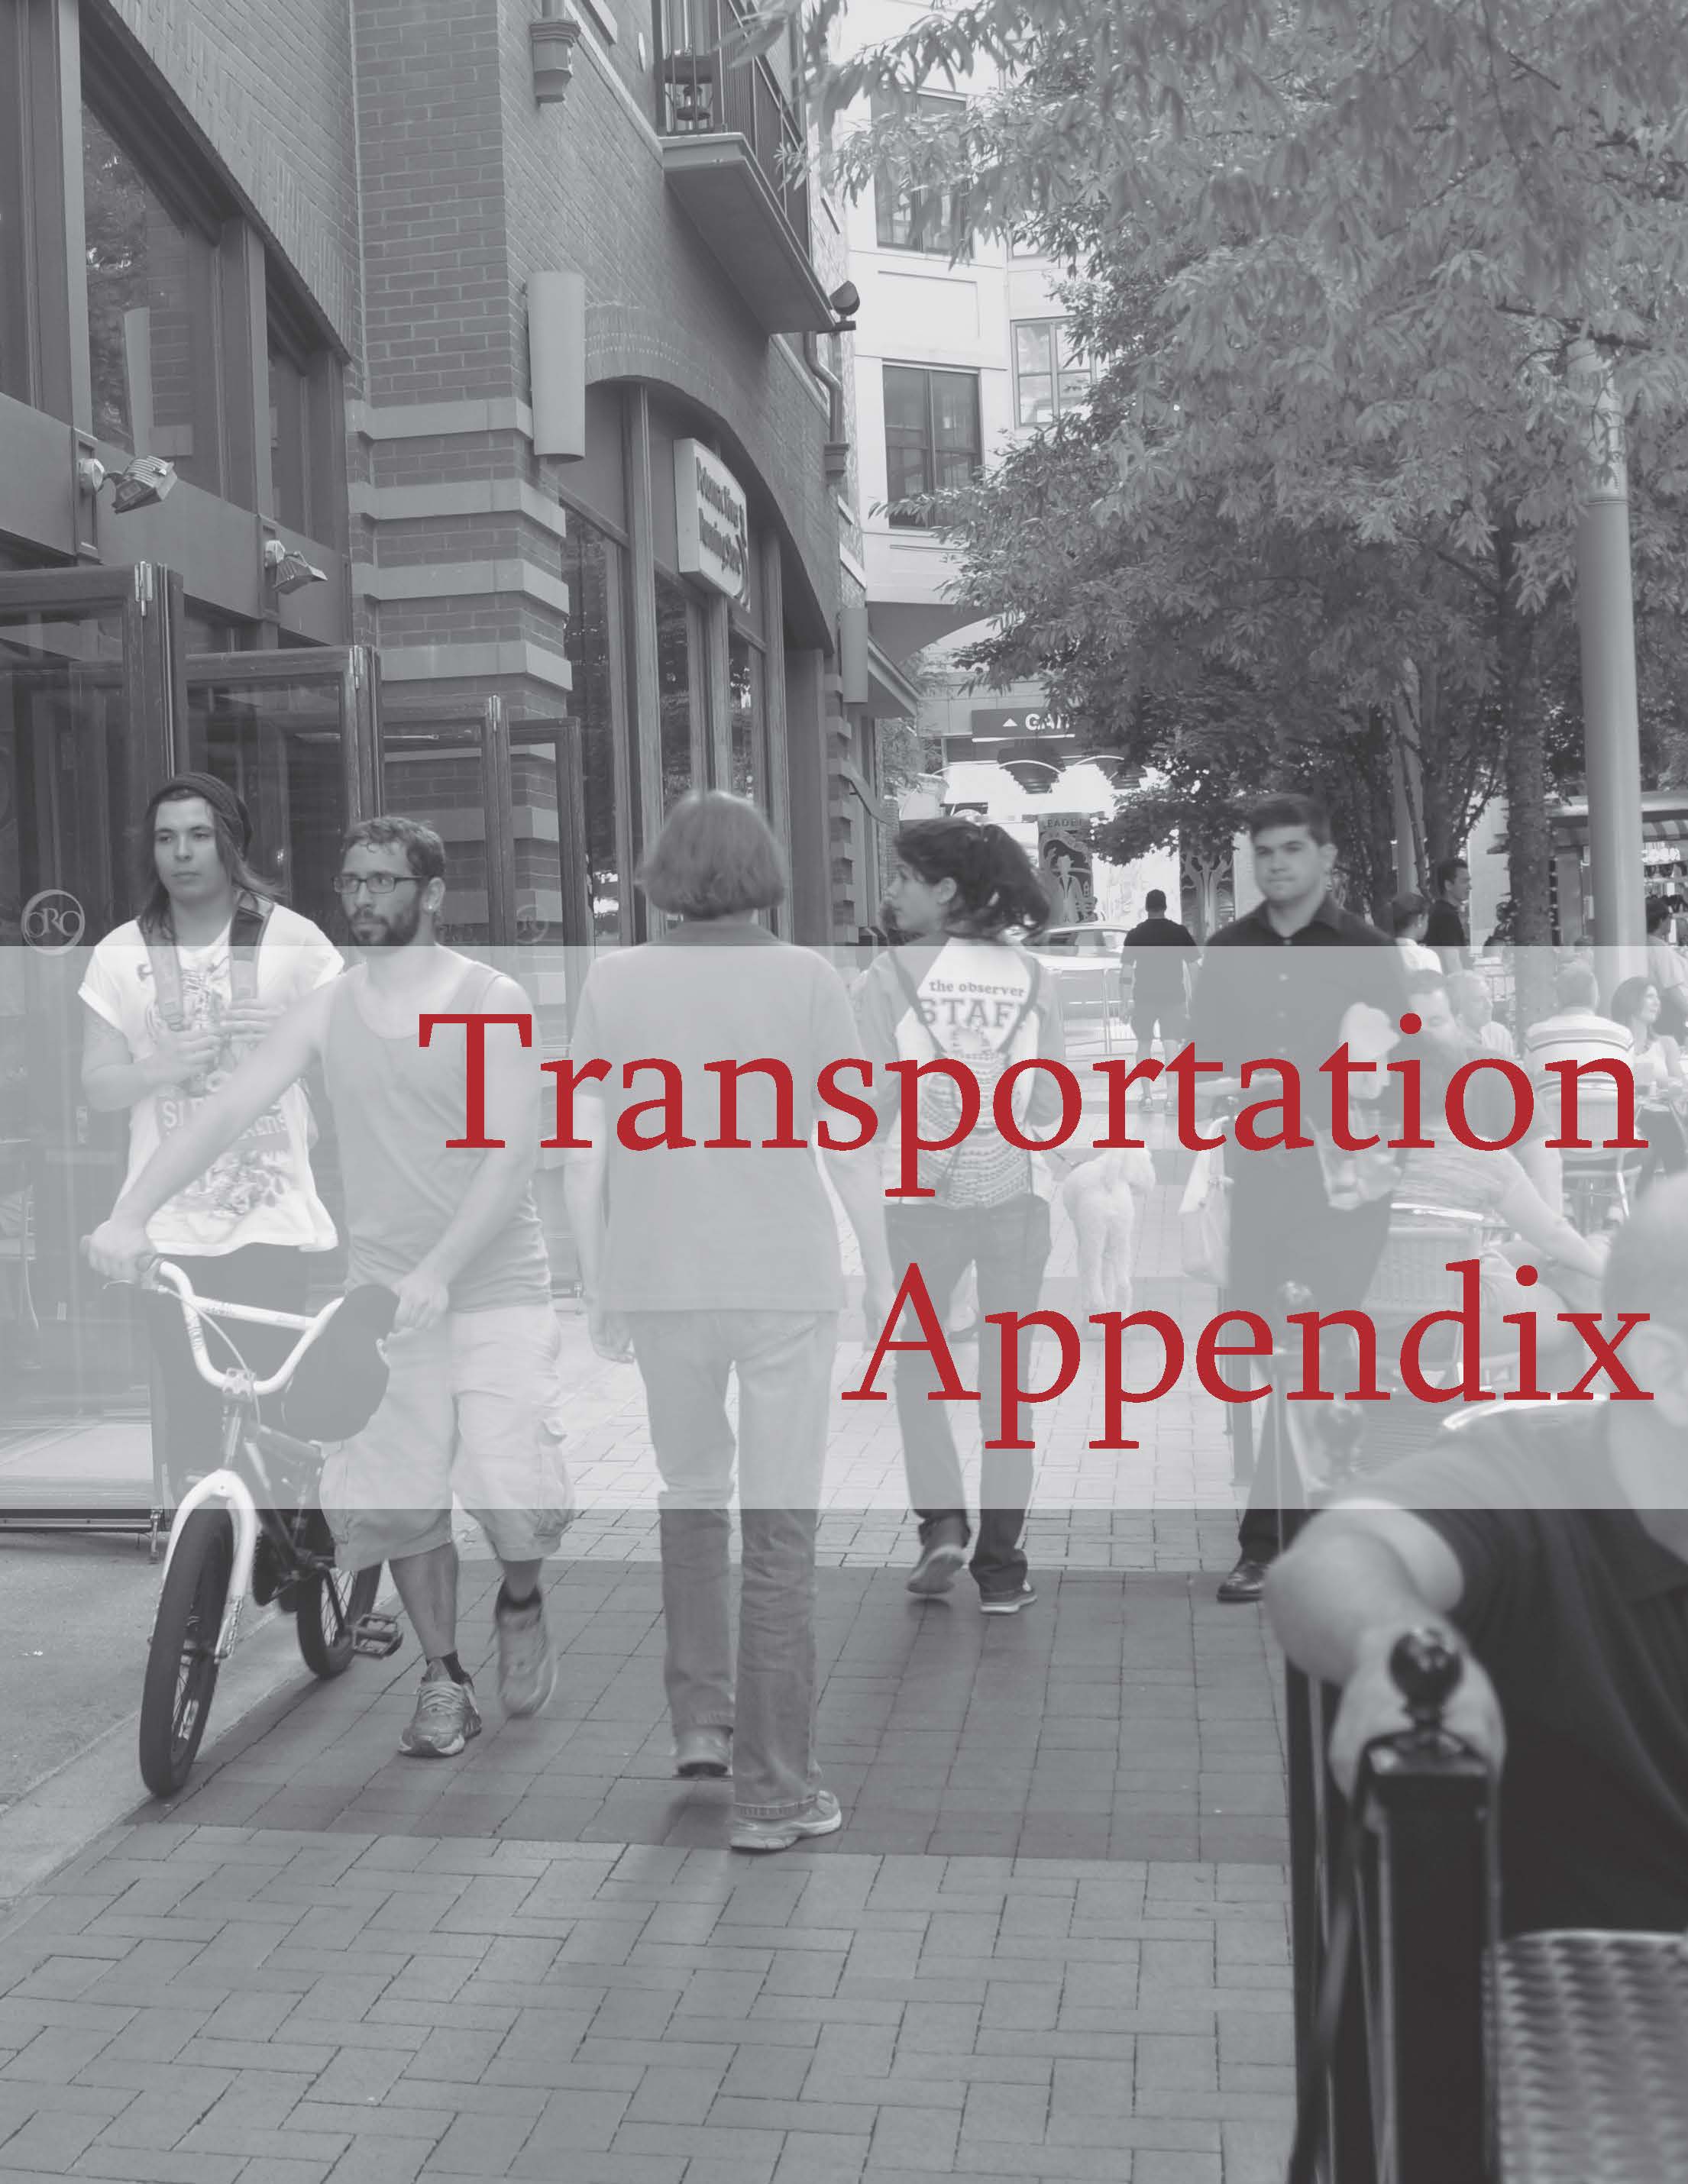 Transportation appendix